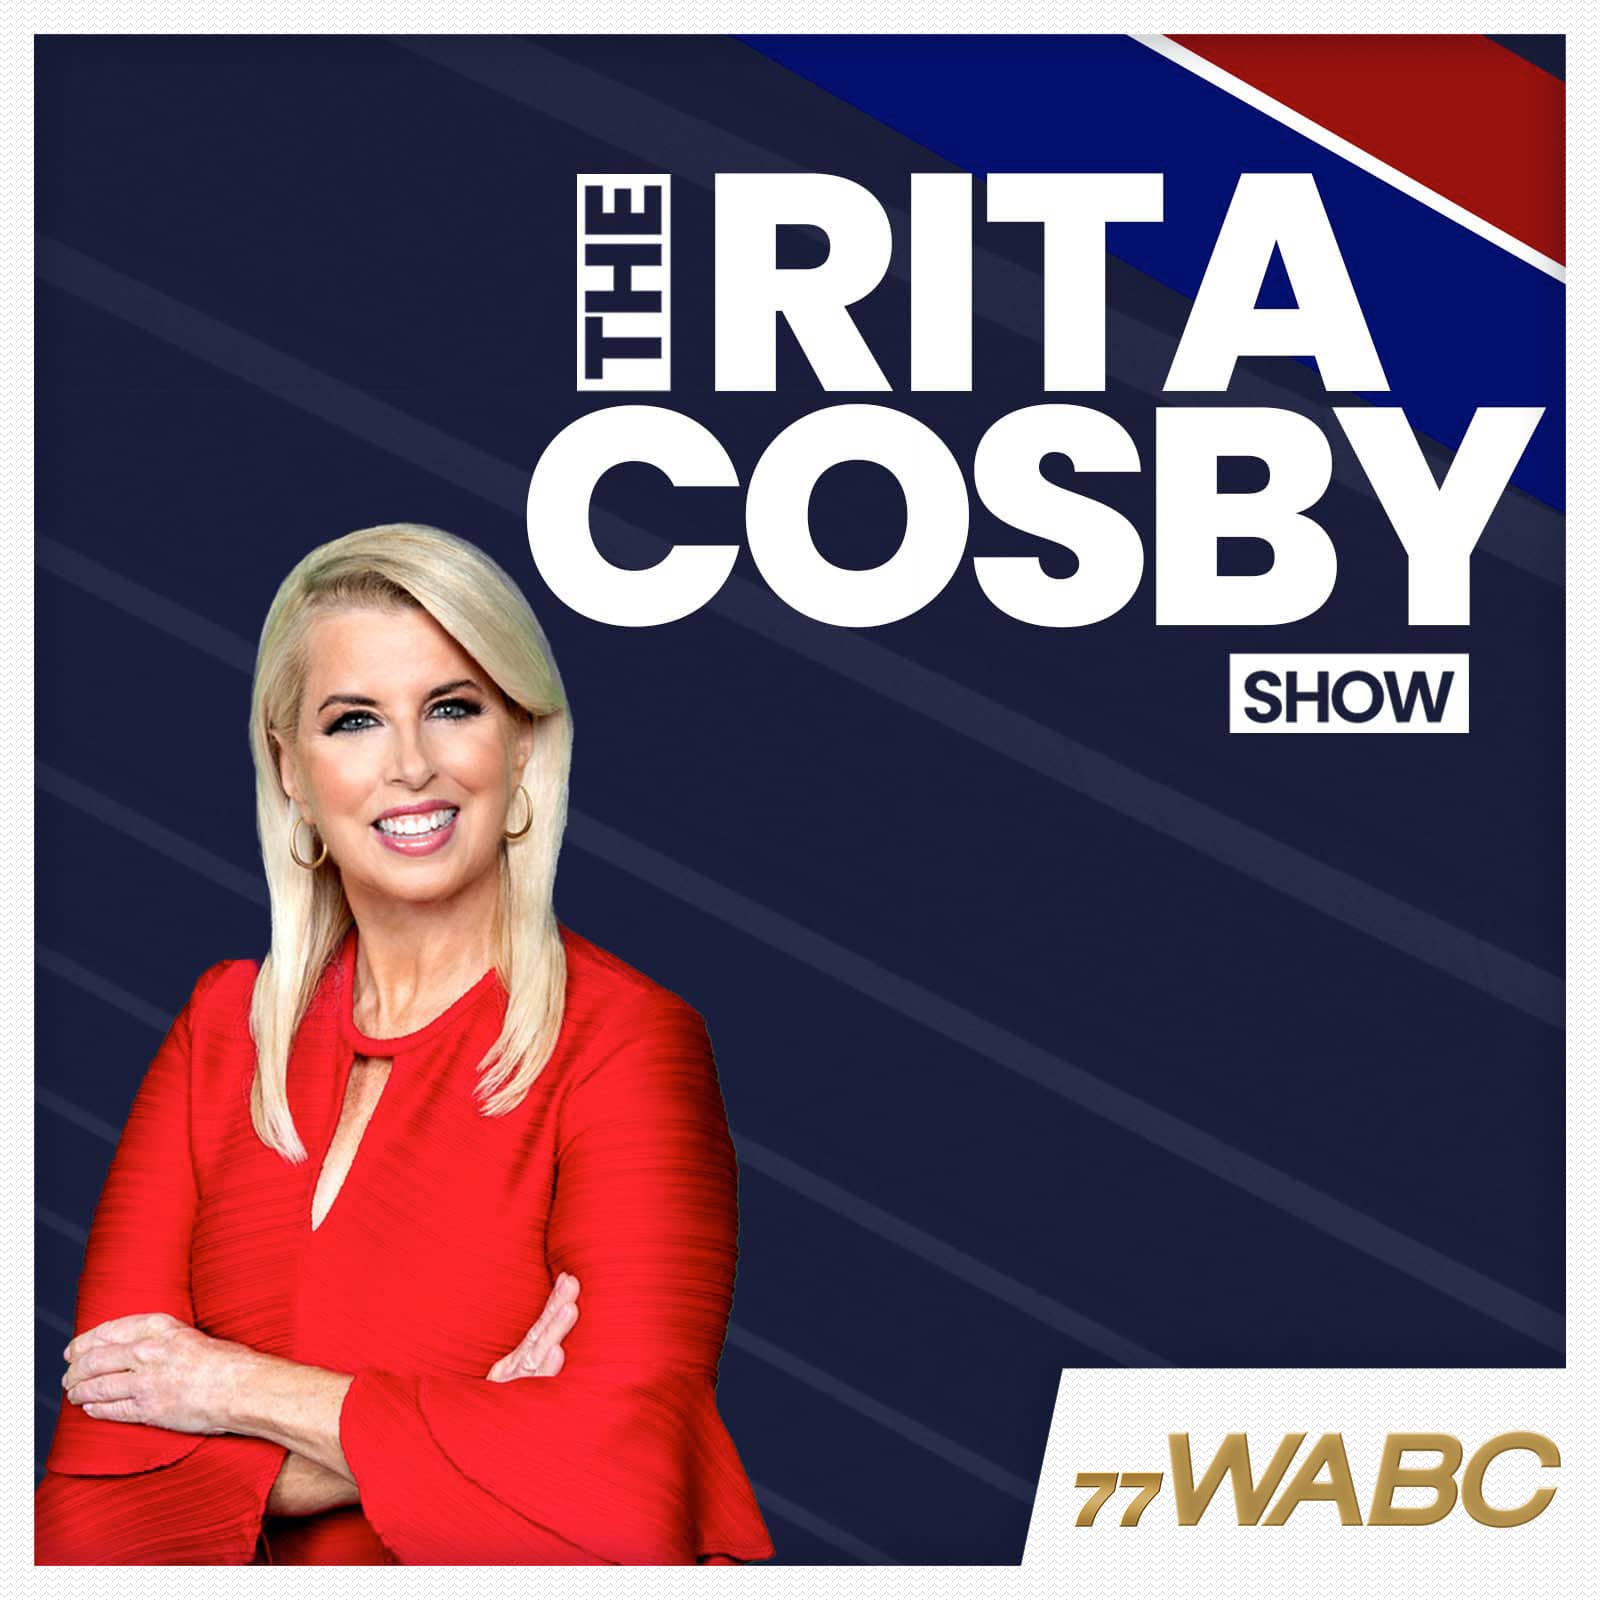 rita-cosby-podcast-new-logo797686